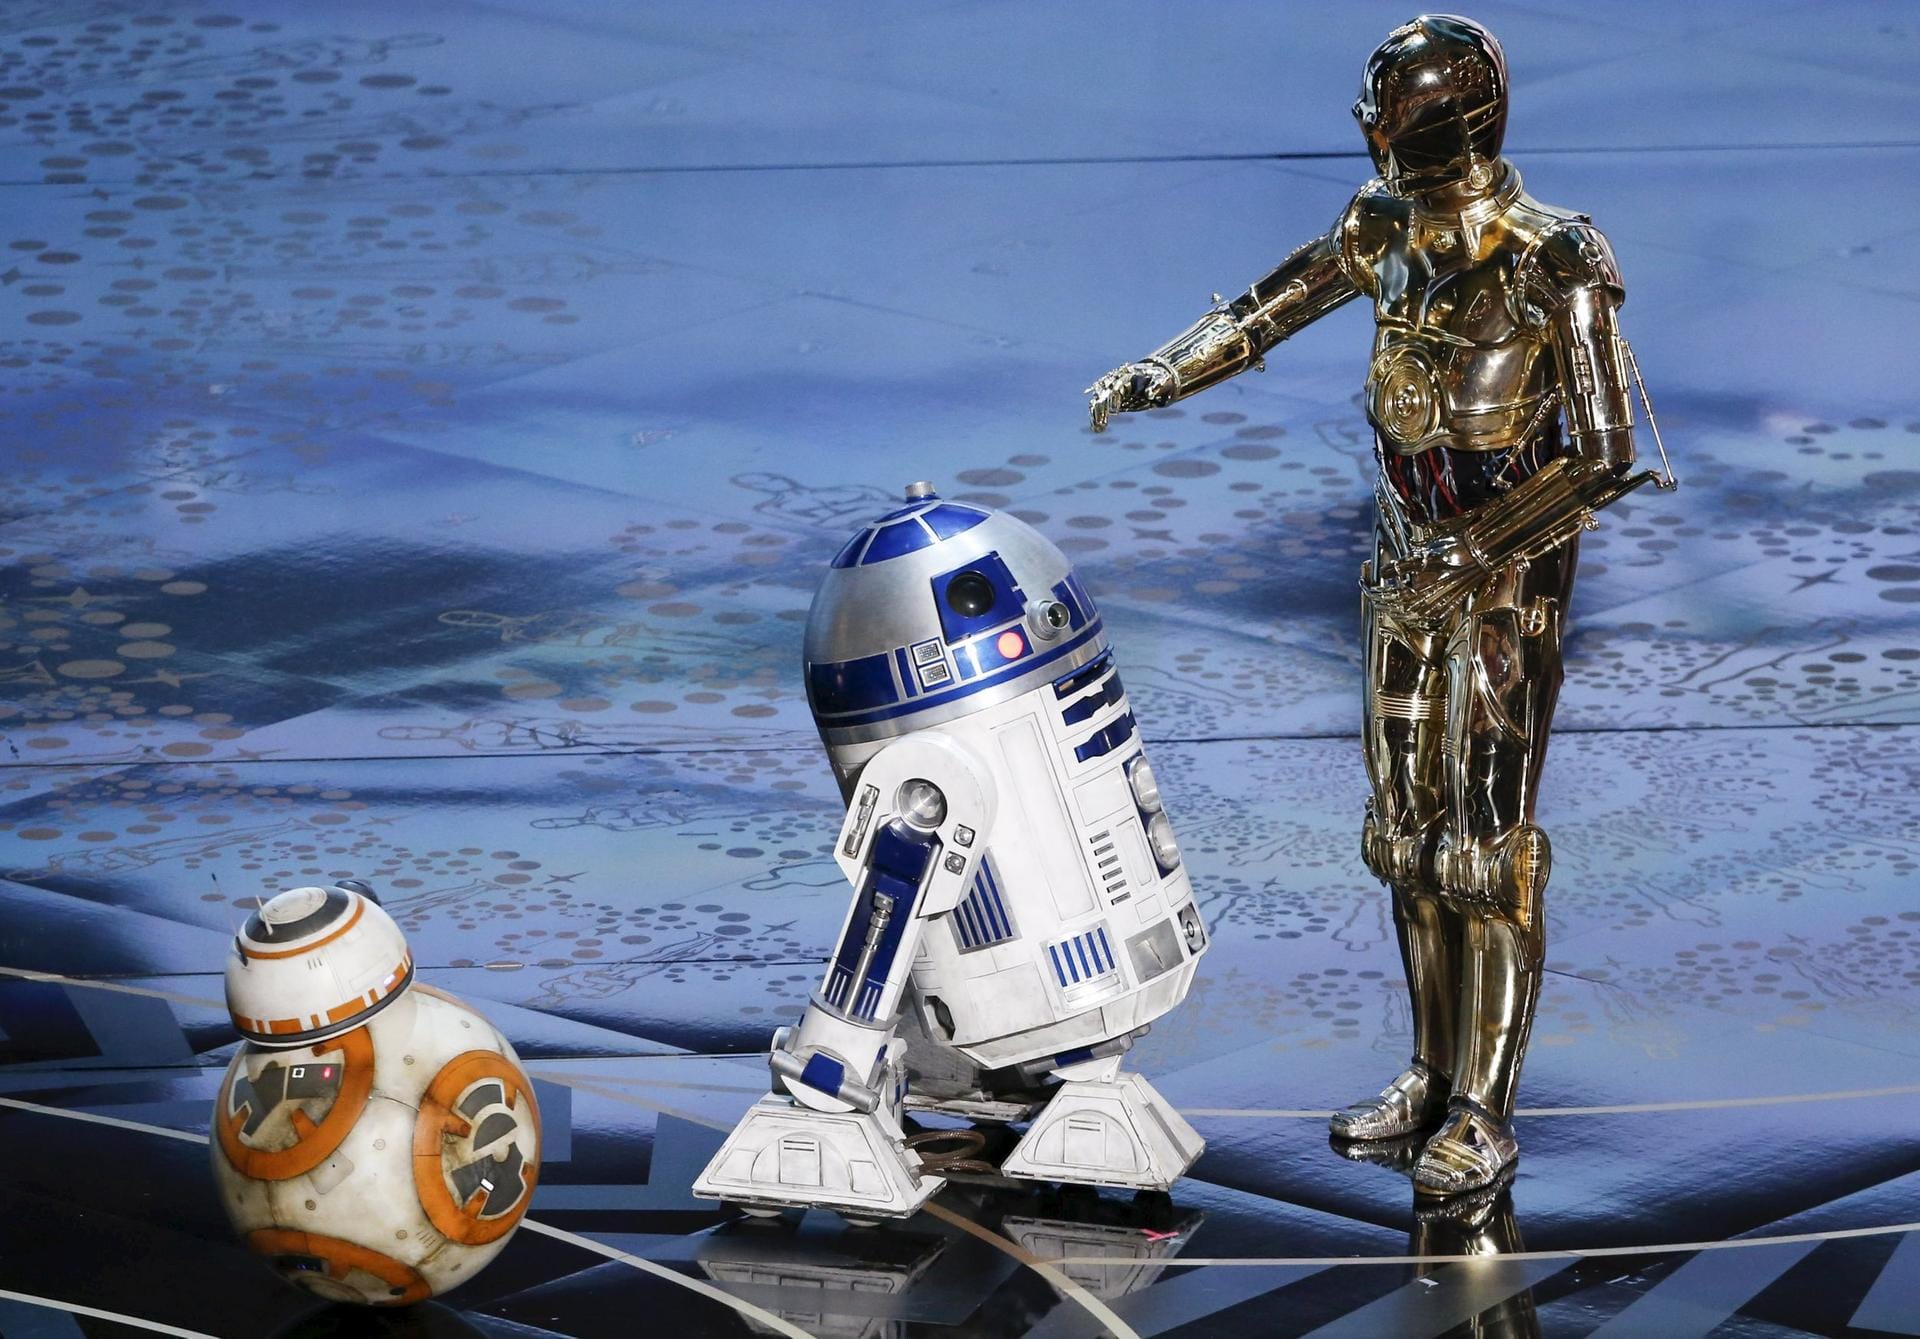 Die "Star Wars"-Droiden BB-8, R2-D2 und C-3PO statten der Oscar-Verleihung einen Besuch ab.